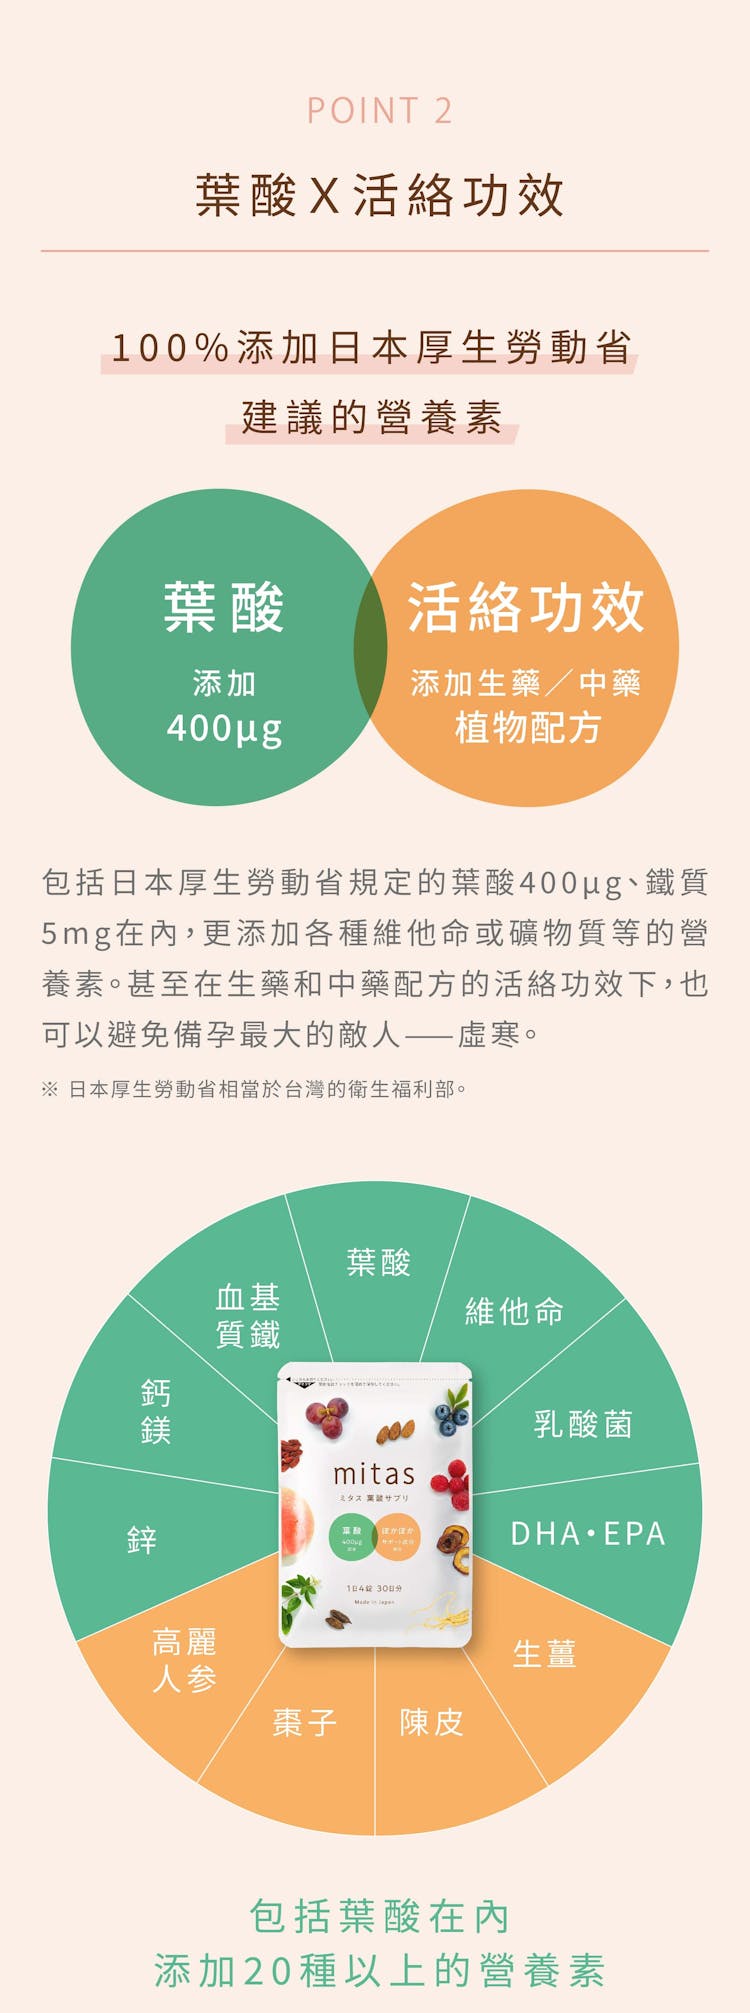 葉酸 x 活絡功效 100%添加日本厚生勞動省建議的營養素